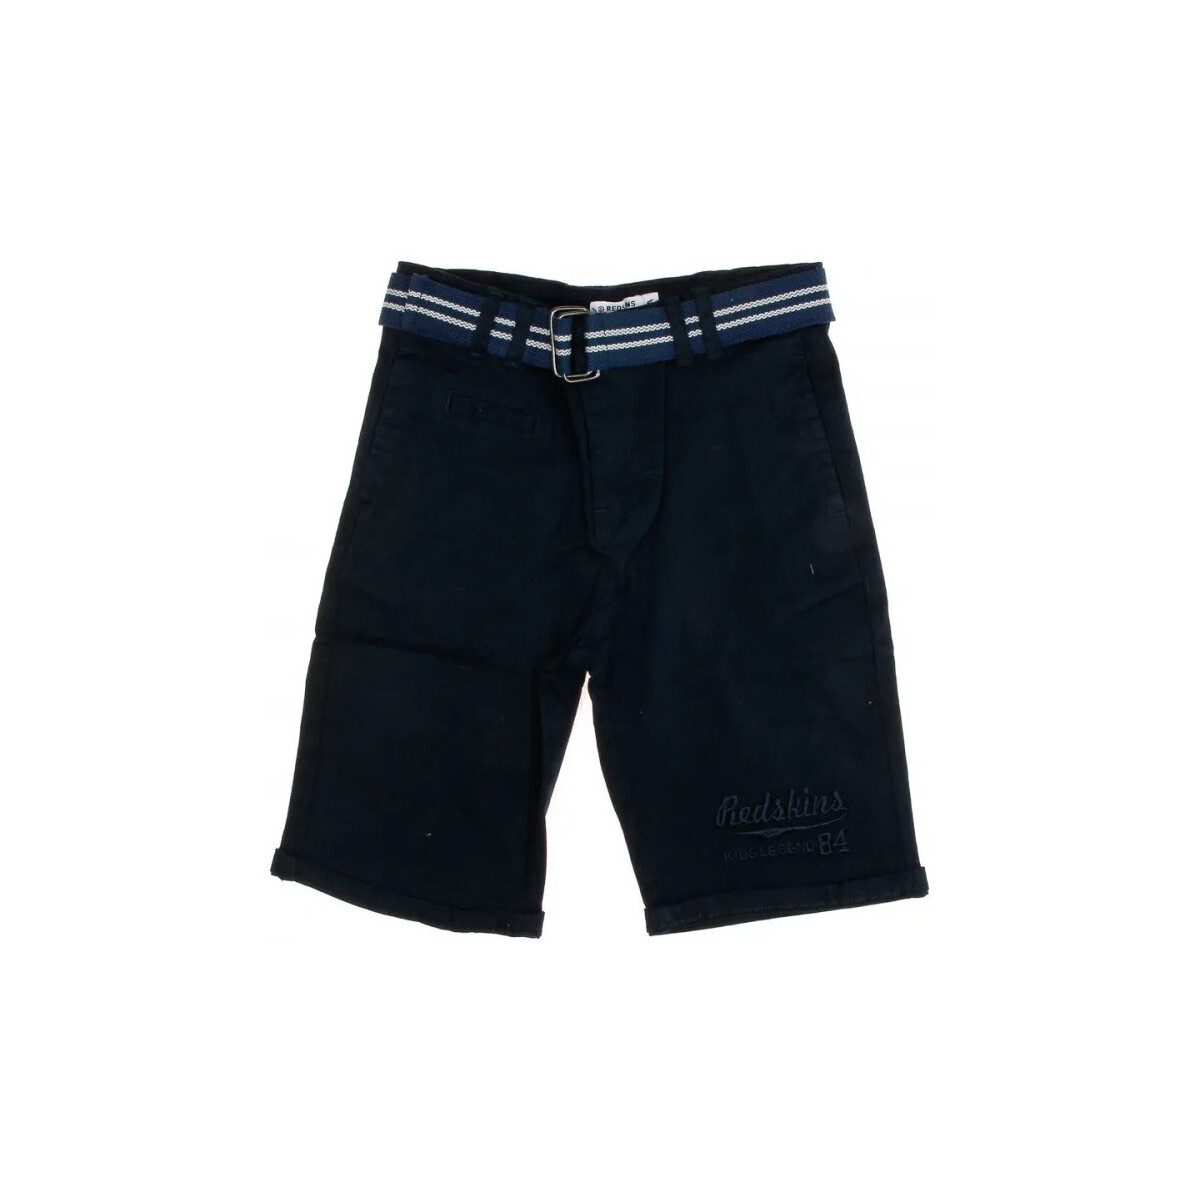 Kleidung Jungen Shorts / Bermudas Redskins RDS-185014-JR Blau